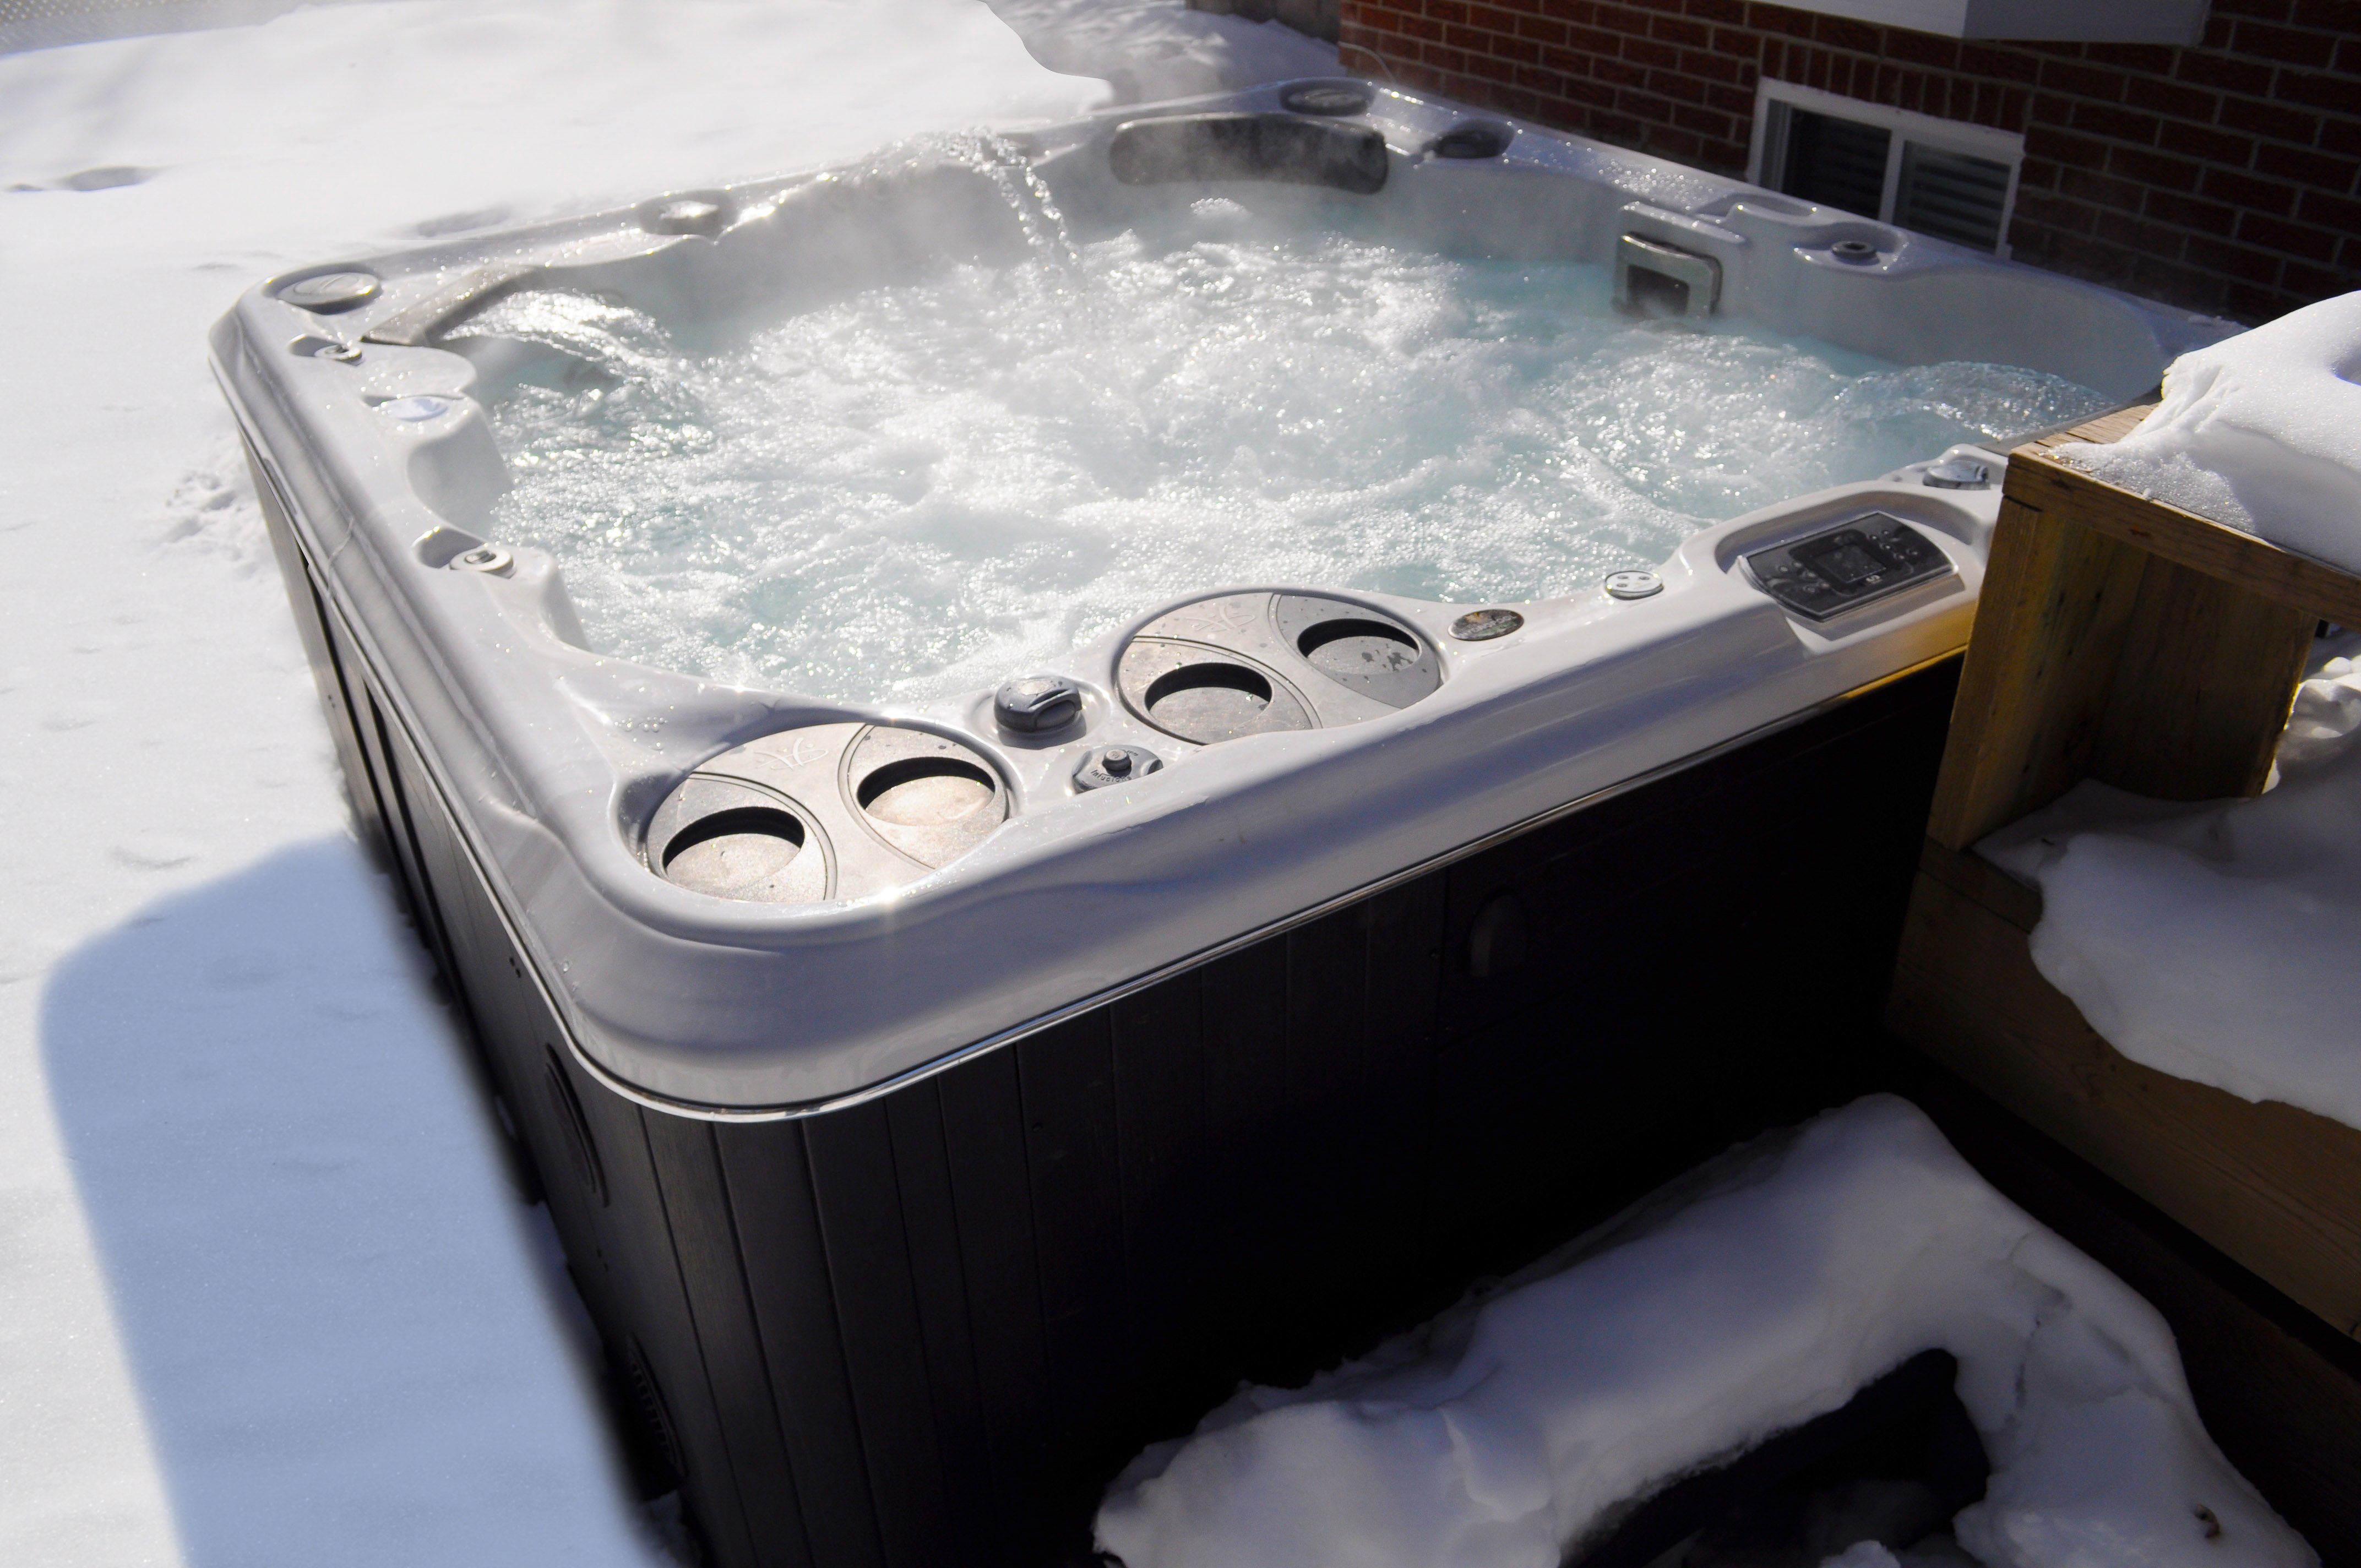 Hydropool-nottingham-hot-tub-spa-winter-steam